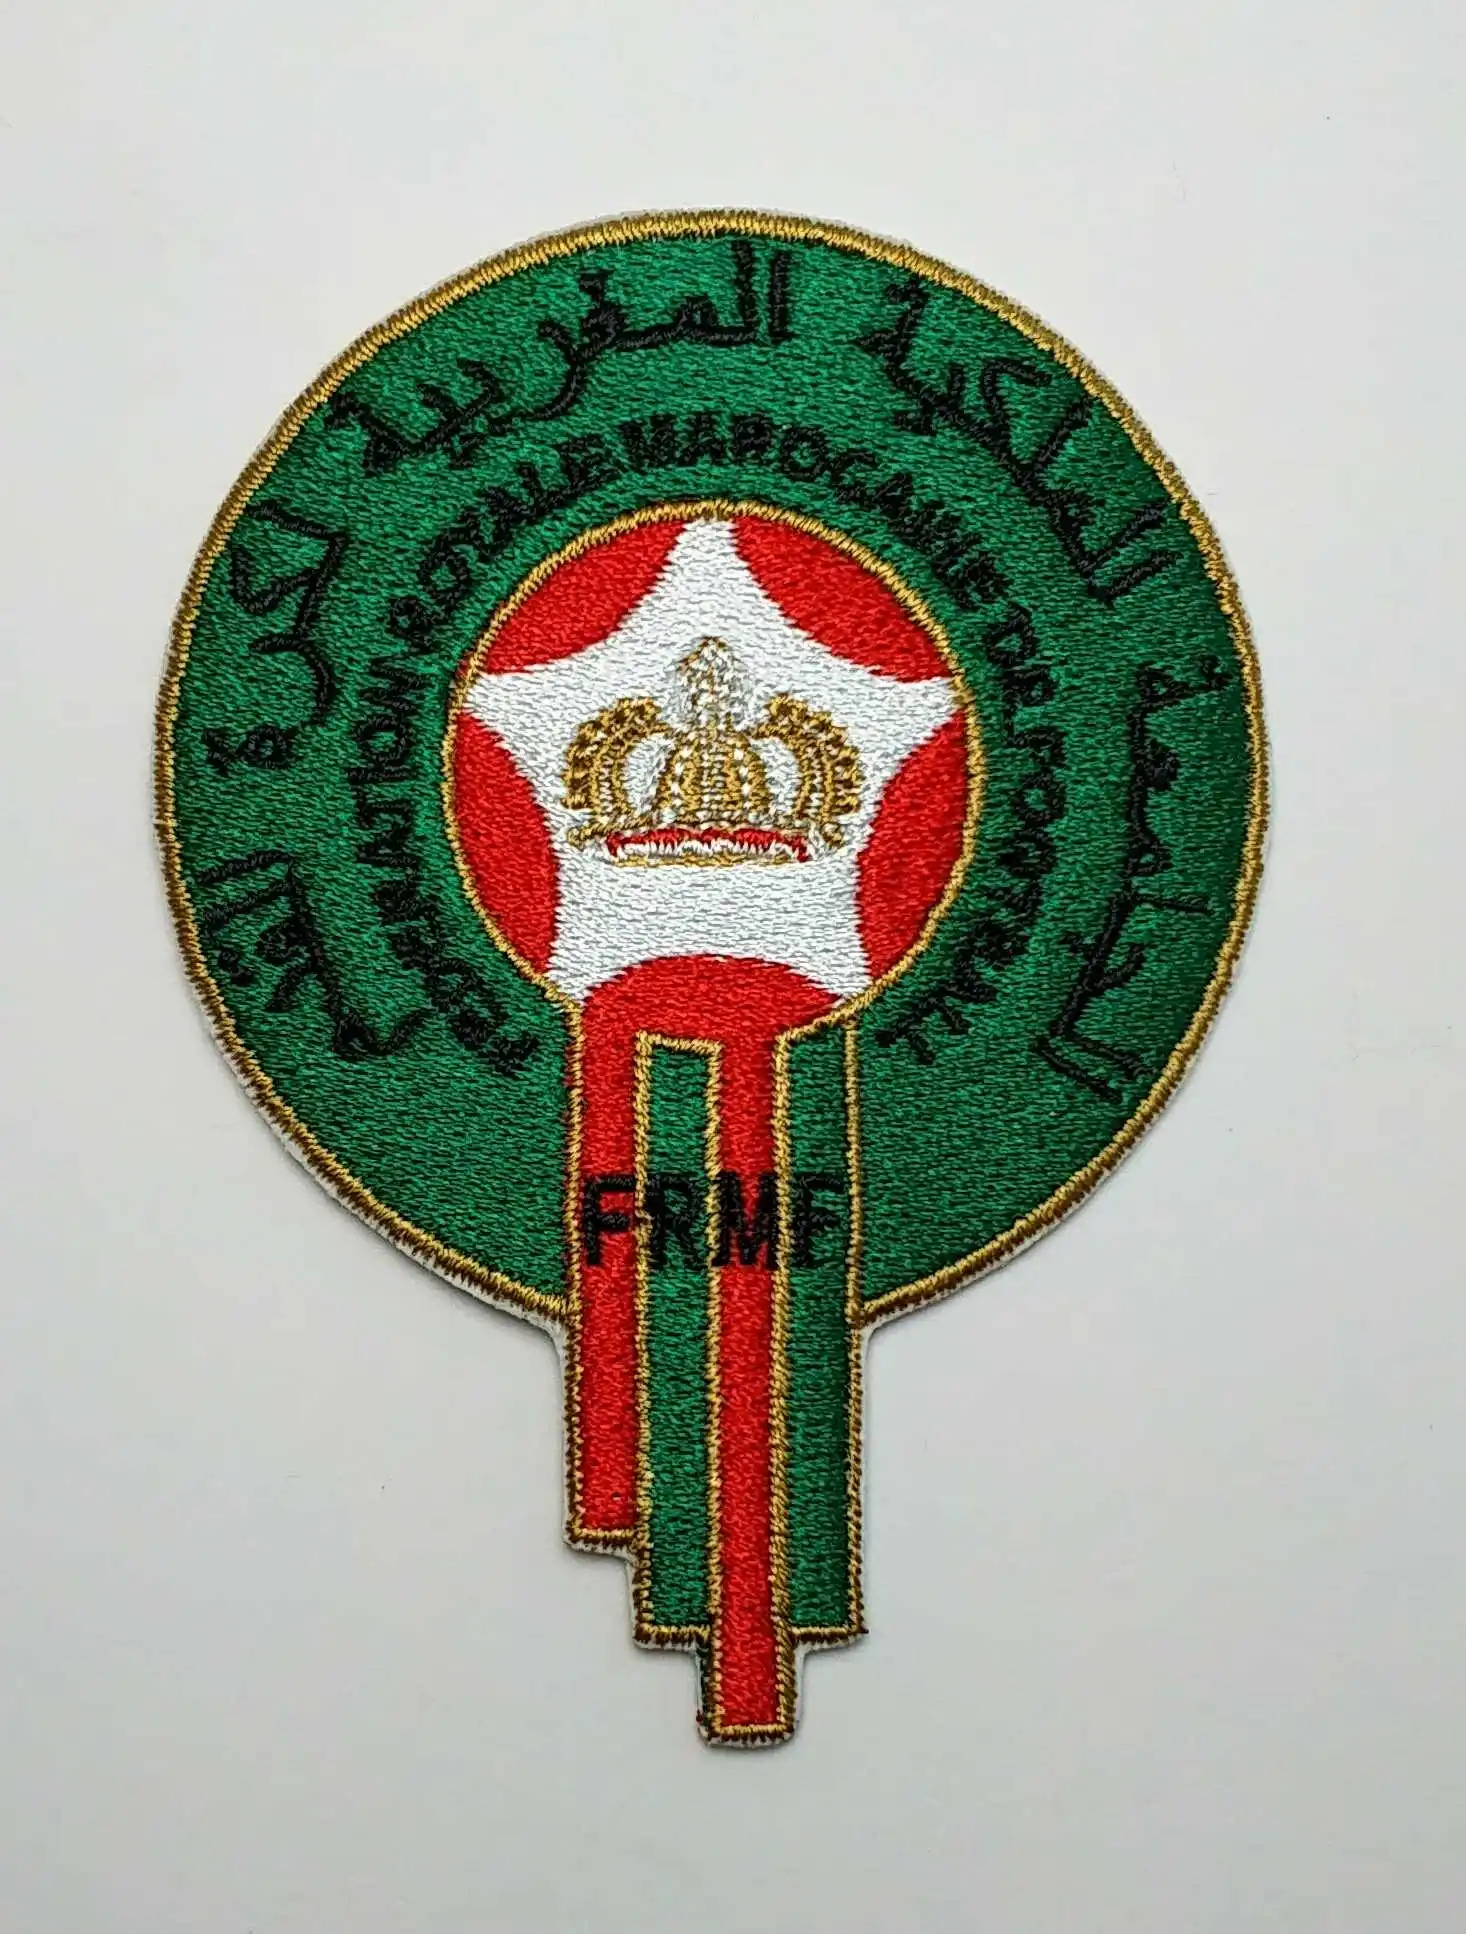 Aufnäher Fußball Football Nationale Mannschaft Morocco Logo patch Bügelbild new 